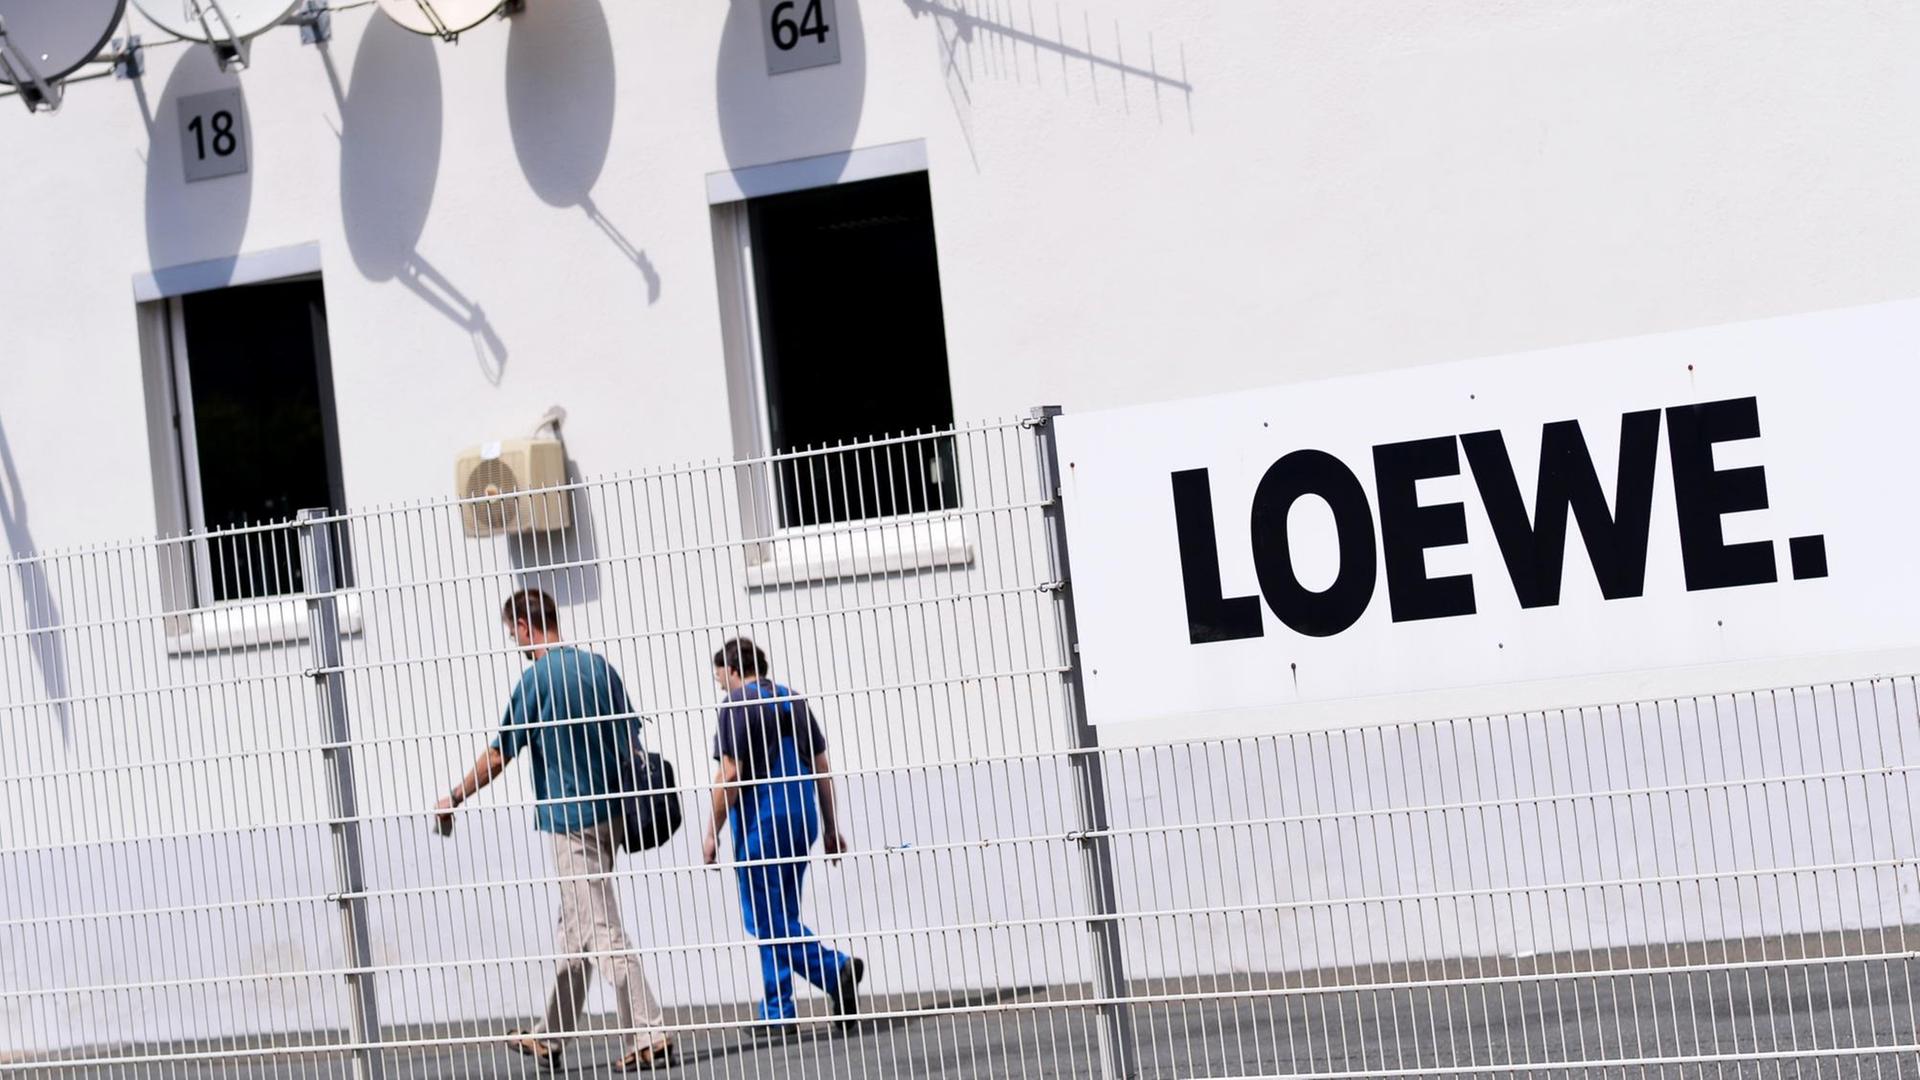 Zwei Mitarbeiter gehen über das Gelände des Elektronikherstellers Loewe AG, dessen Schriftzug groß an der Wand gesehen.